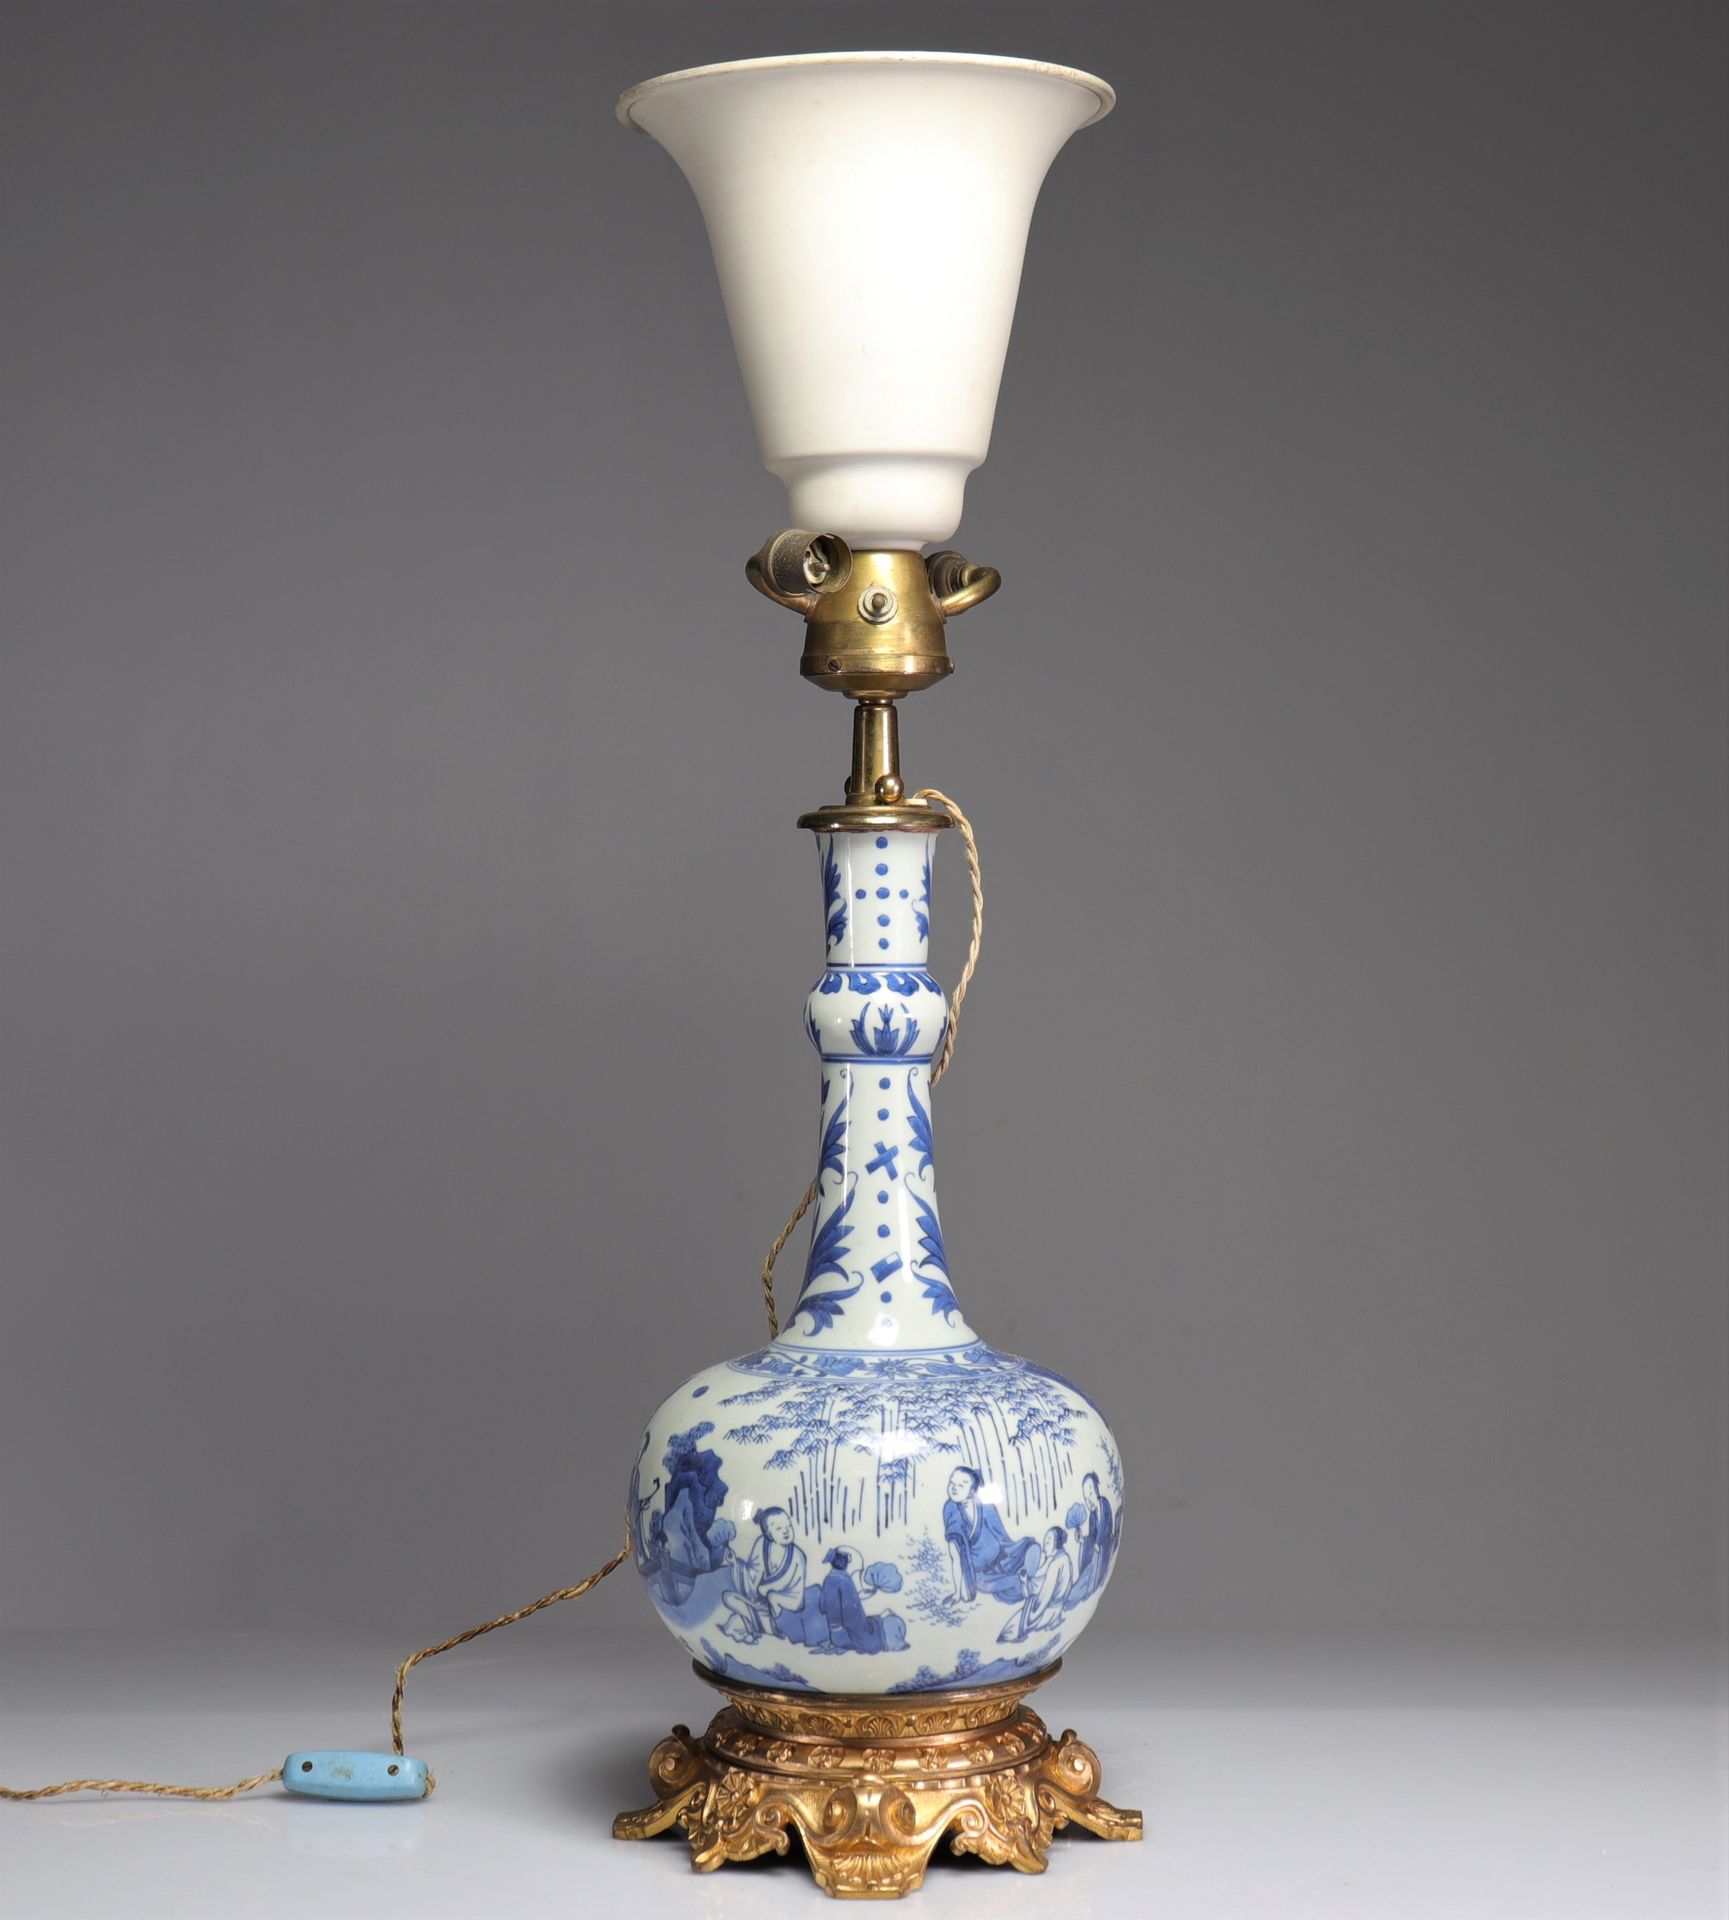 Null lampe en porcelaine blanc bleu, époque transition
Poids: 4.90 kg
Région: Ch&hellip;